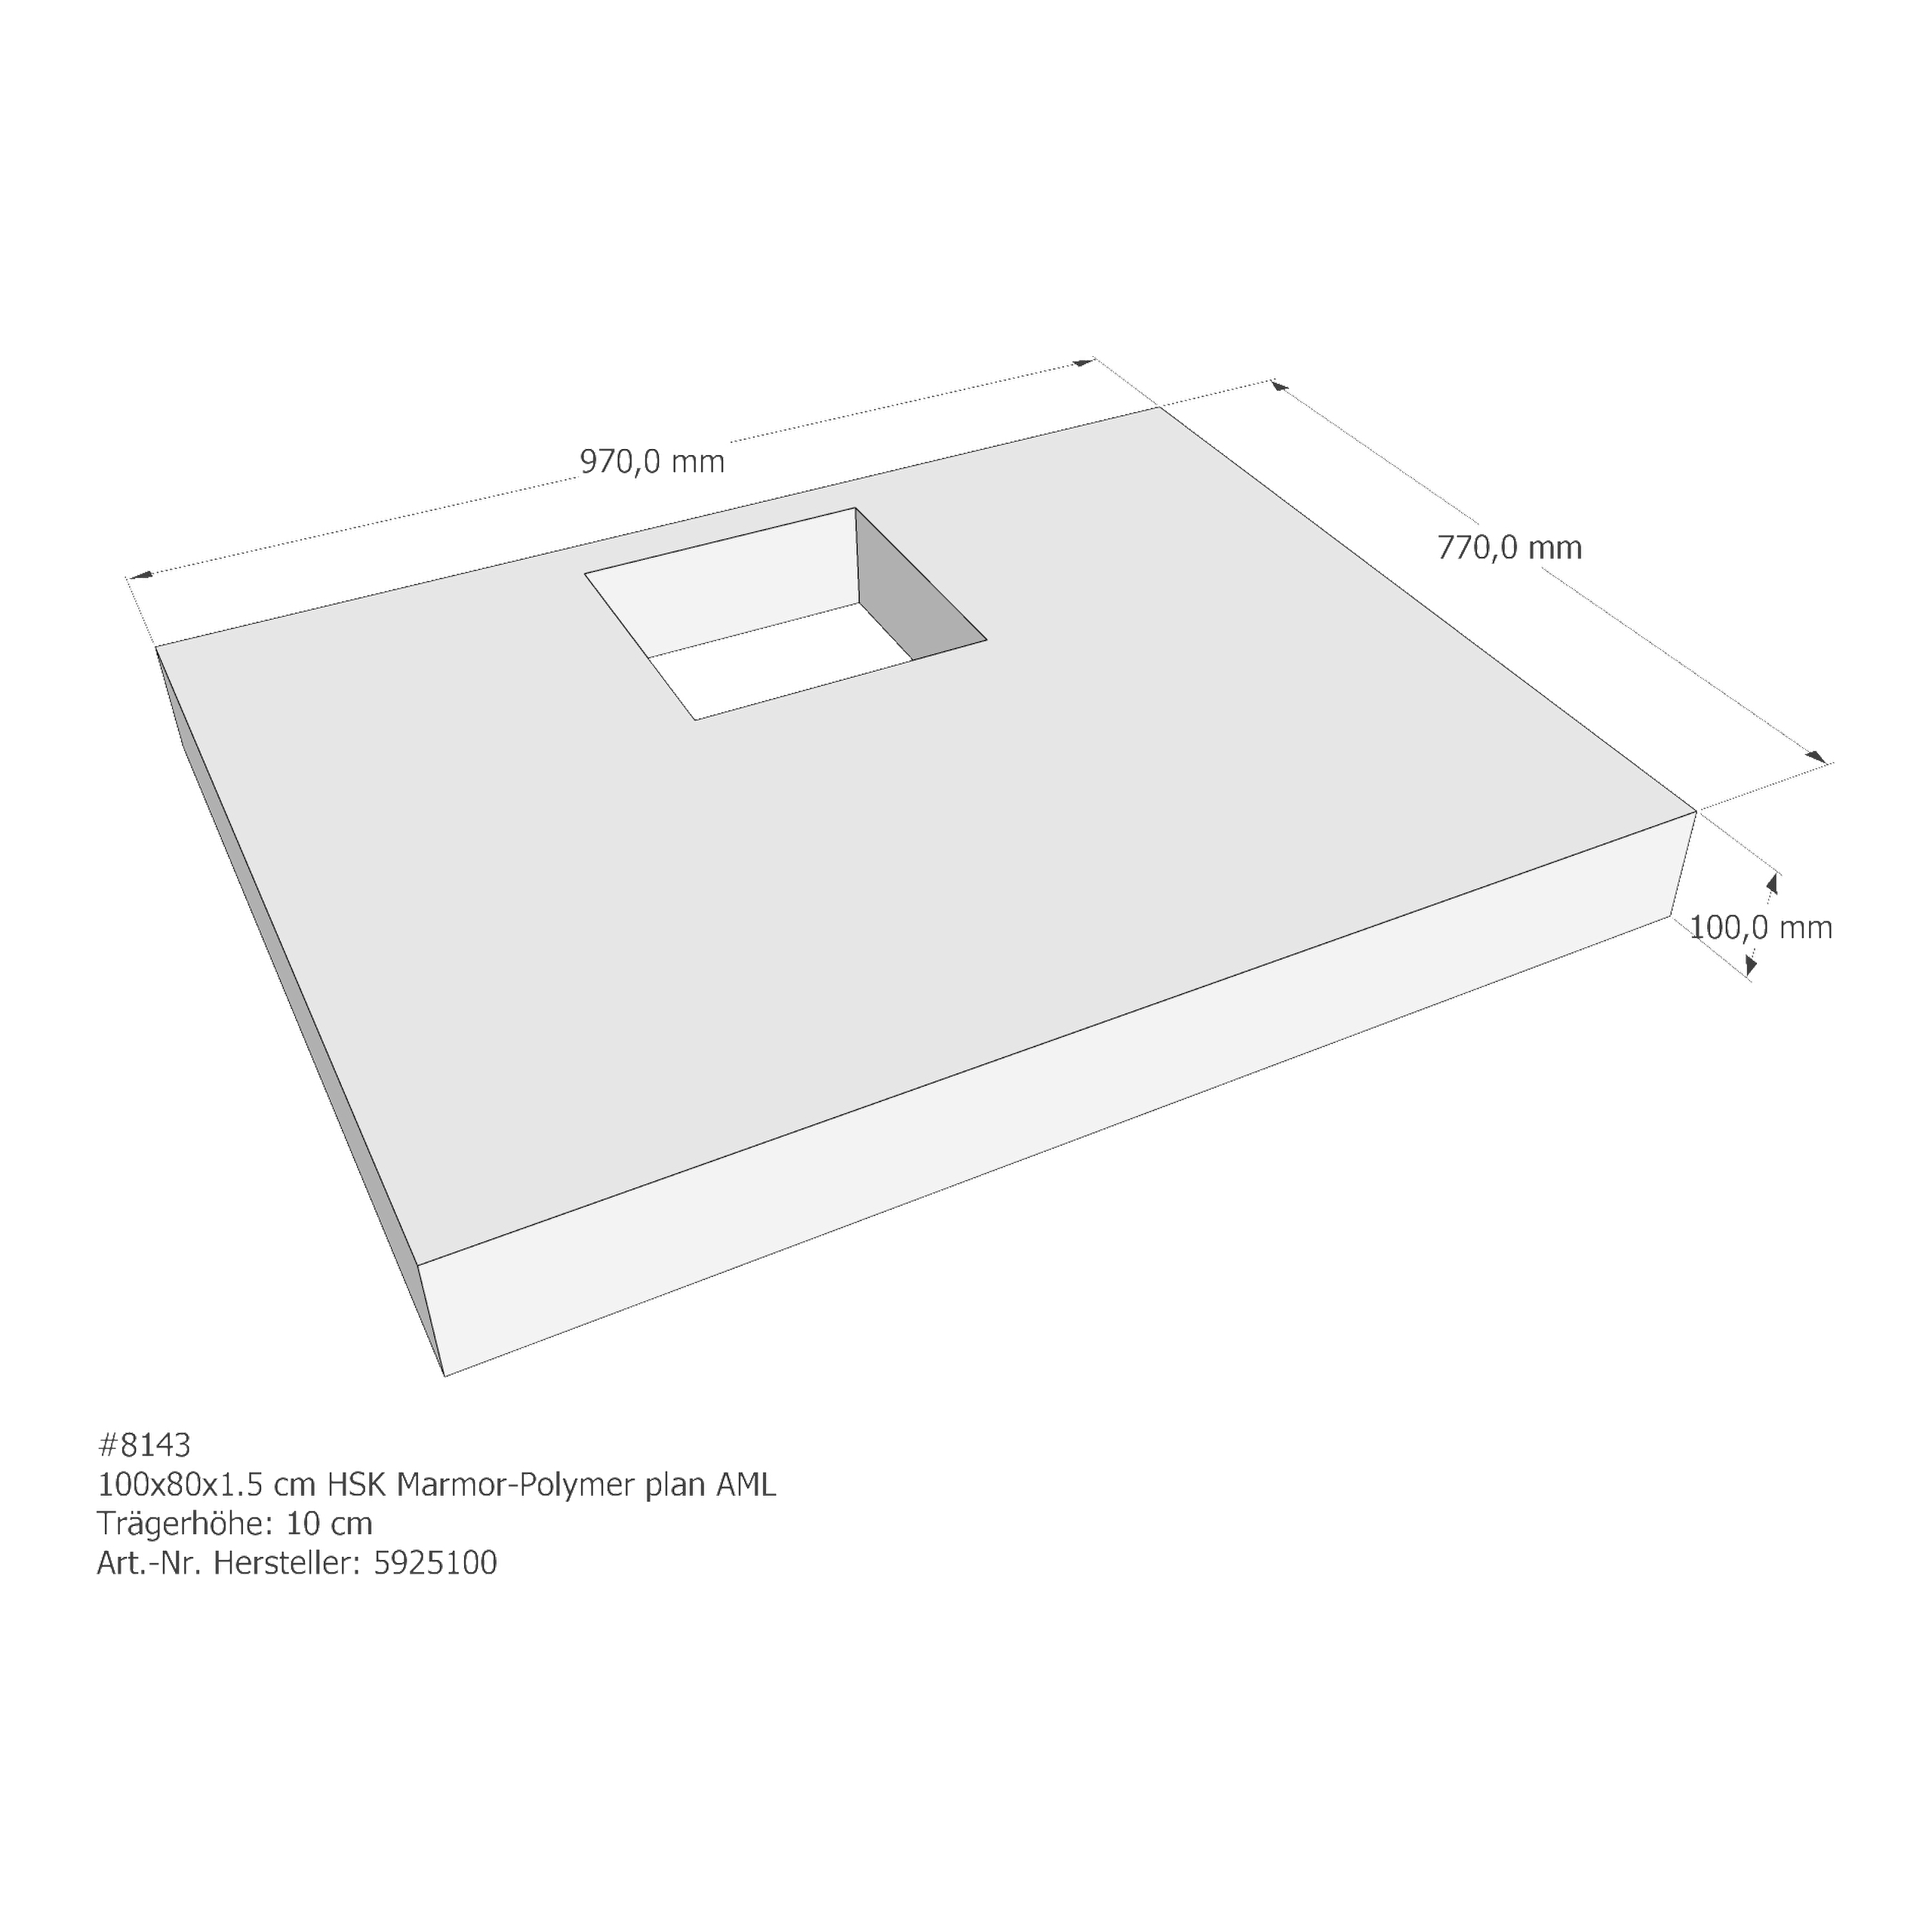 Duschwannenträger HSK Marmor-Polymer plan 100x80x1,5 cm AML